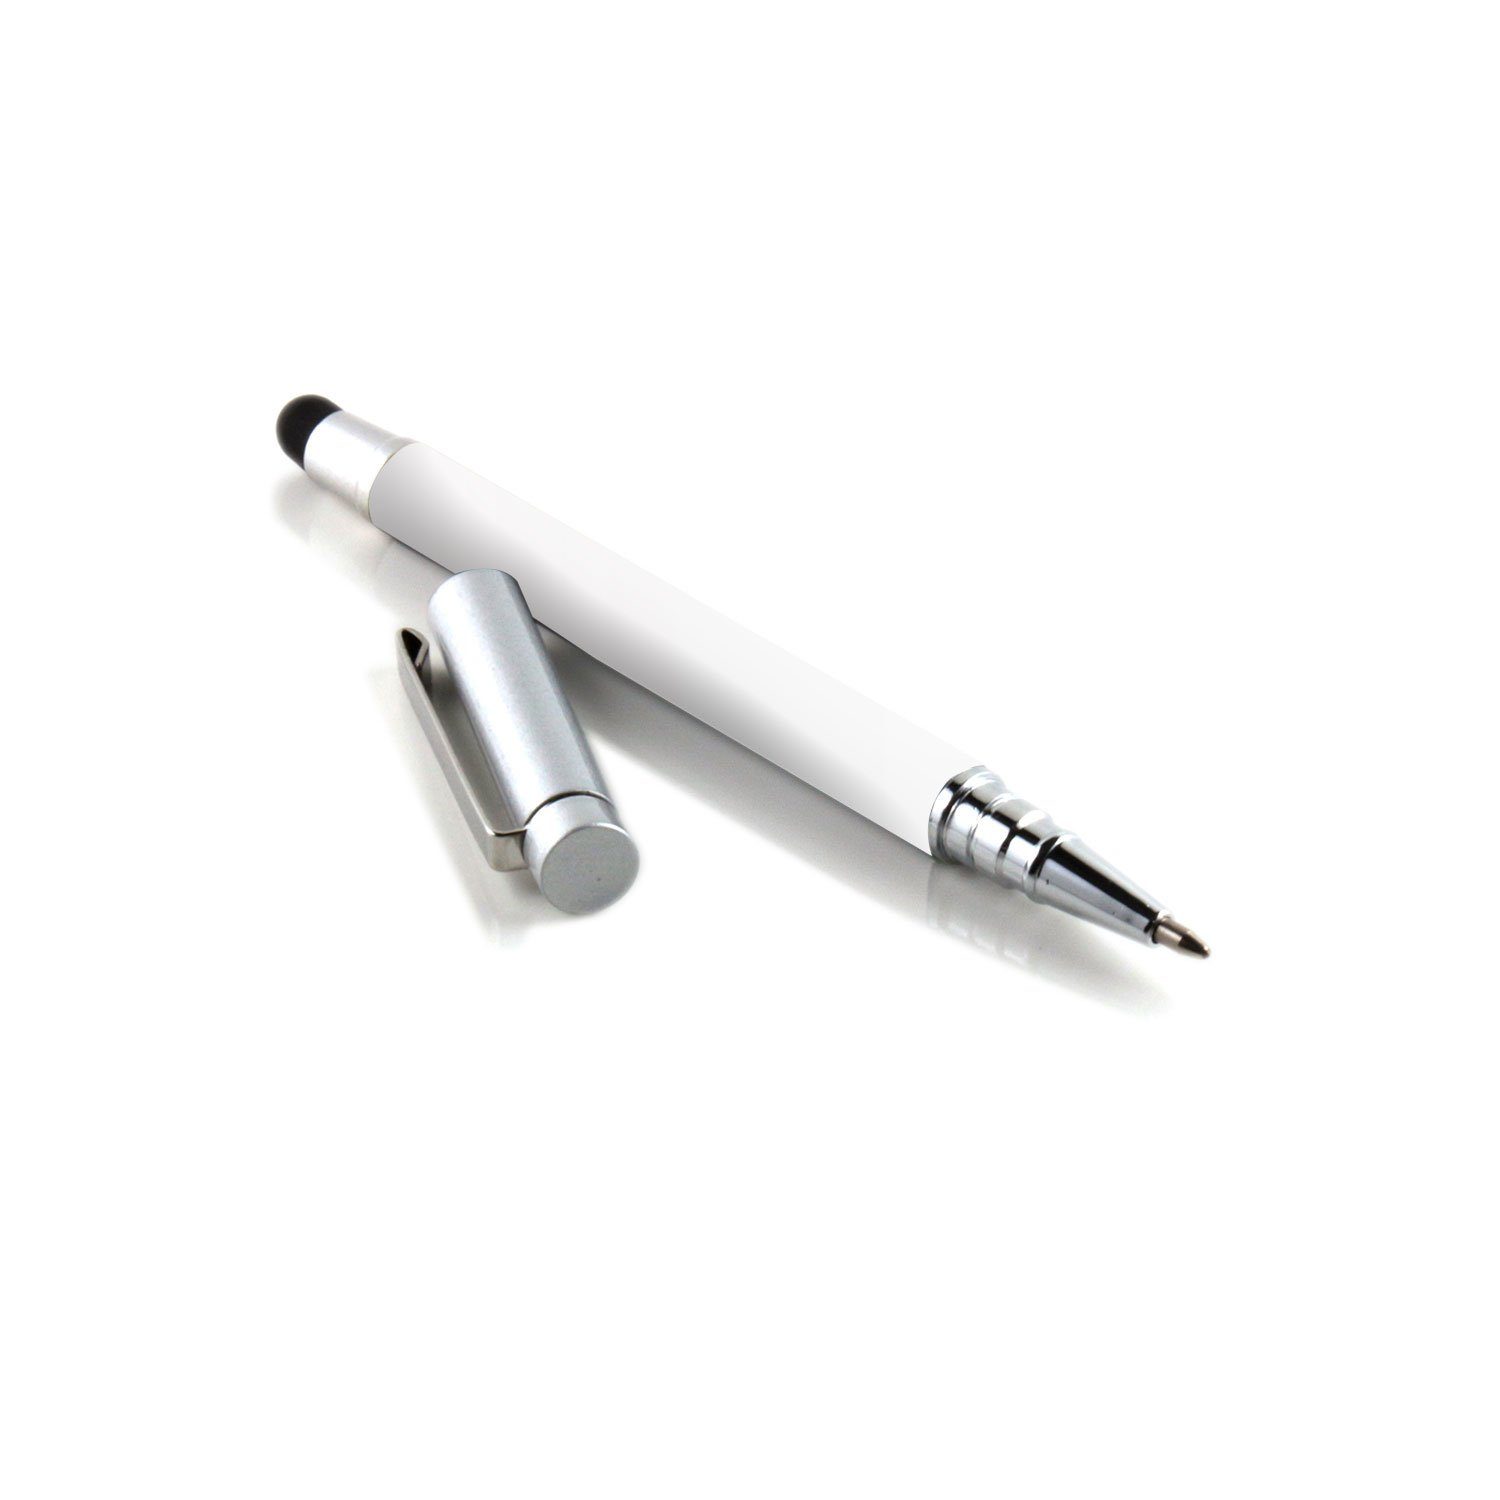 SLABO Eingabestift 2in1 Stylus Touch Pen für iPad (2010 - 2020), iPad mini  (2012 - 2019), iPad Pro / iPad Air (2015 - 2021), iPhone (2007 - 2021) etc.  Eingabestift und Kugelschreiber Touch Stift – WEIß, SILBER